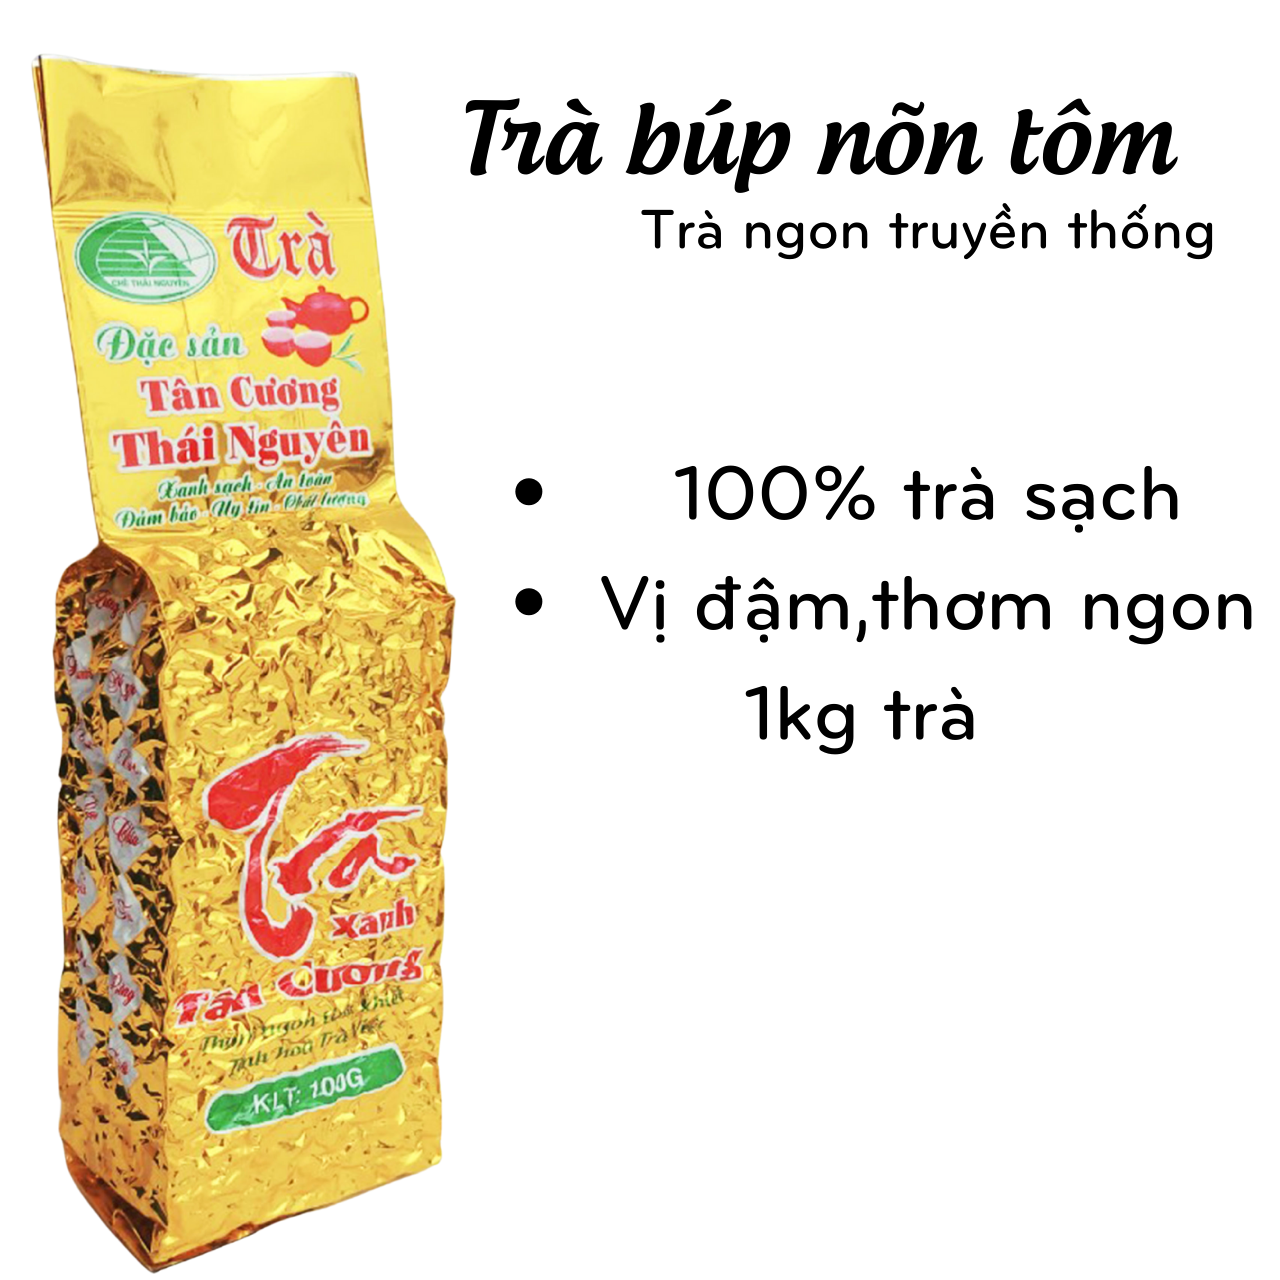 Chè búp Thái nguyên loại 200k 1kg